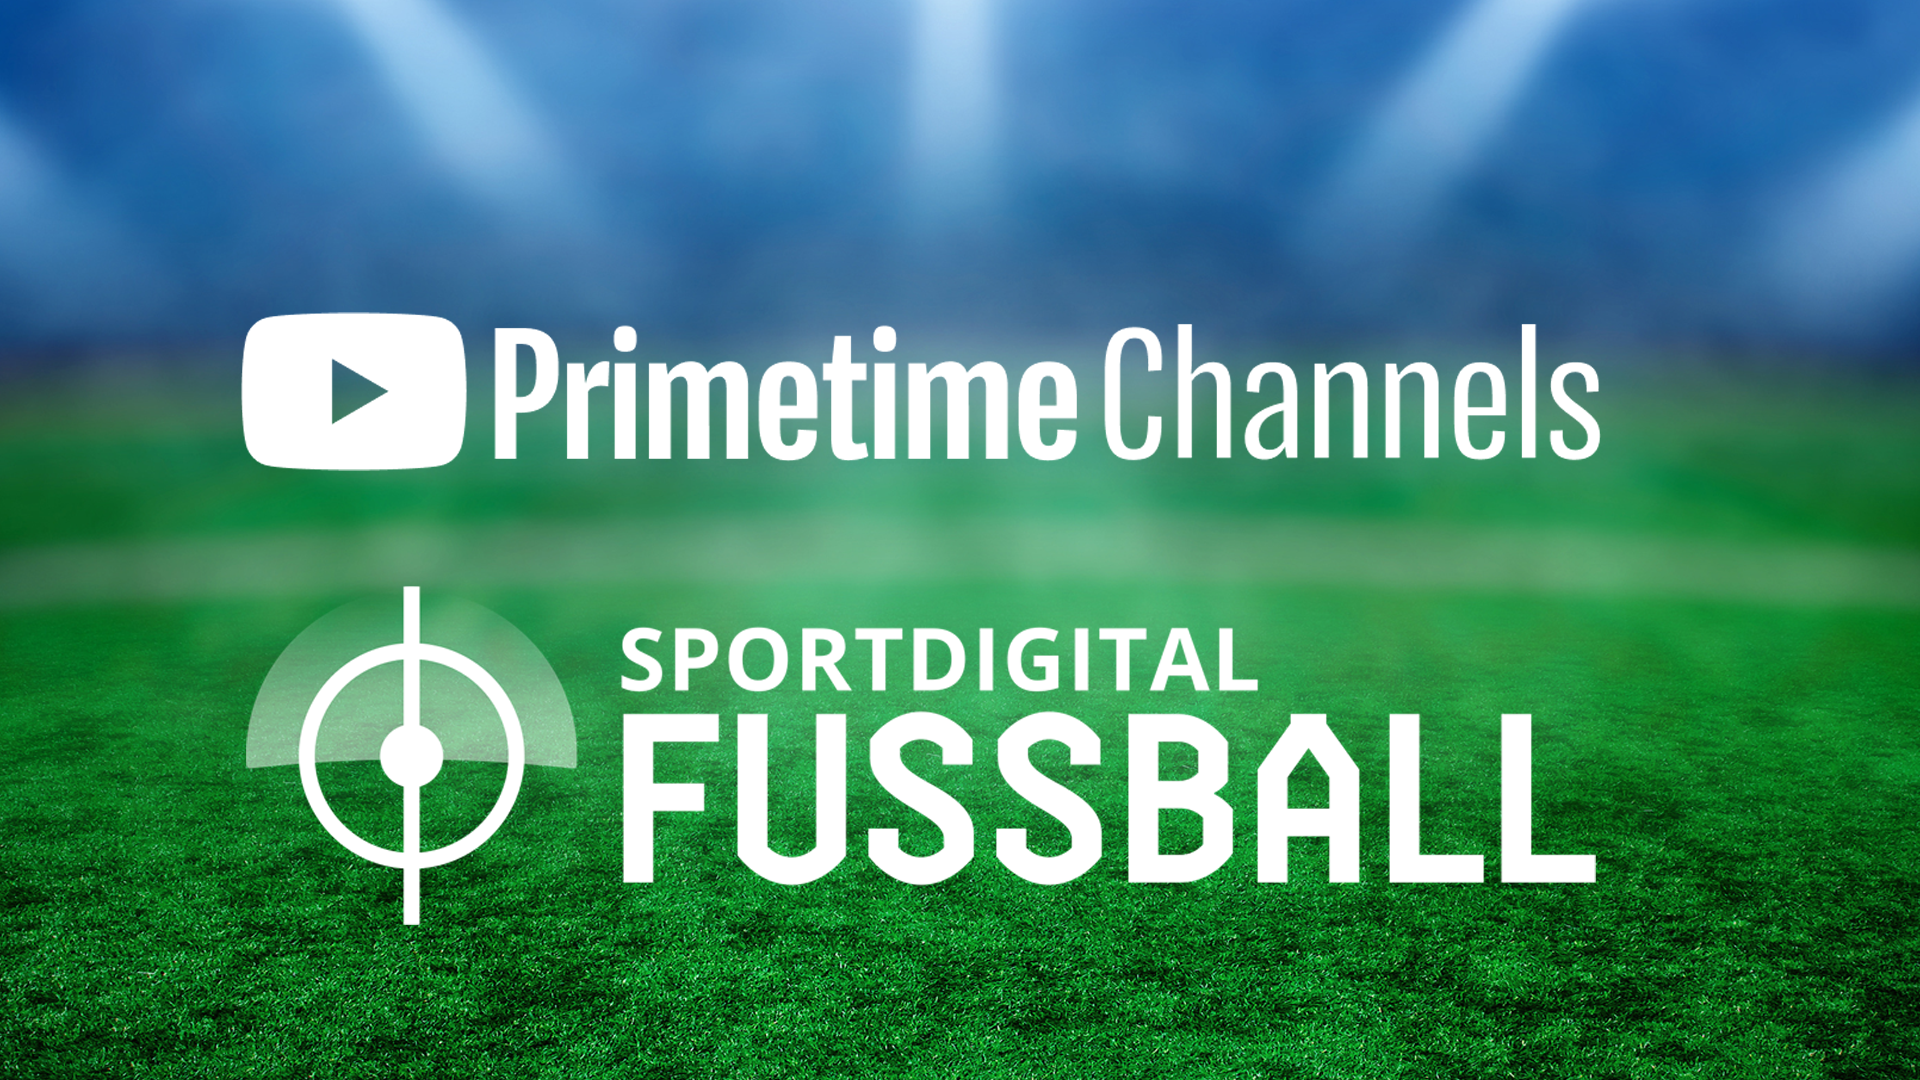 Sportdigital FUSSBALL baut Partnerschaft mit YouTube aus! Neues Streaming-Angebot Primetime Channels startet in Deutschland